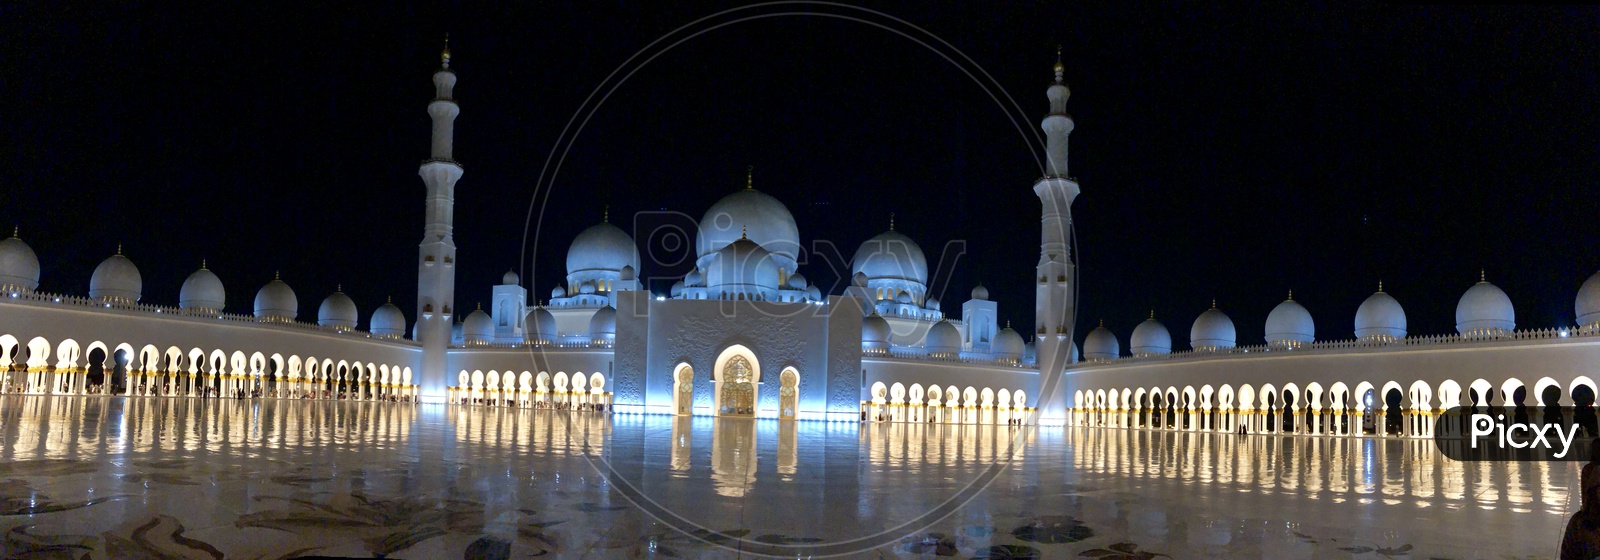 Panaroma of Sheik Zayed Grand Mosque